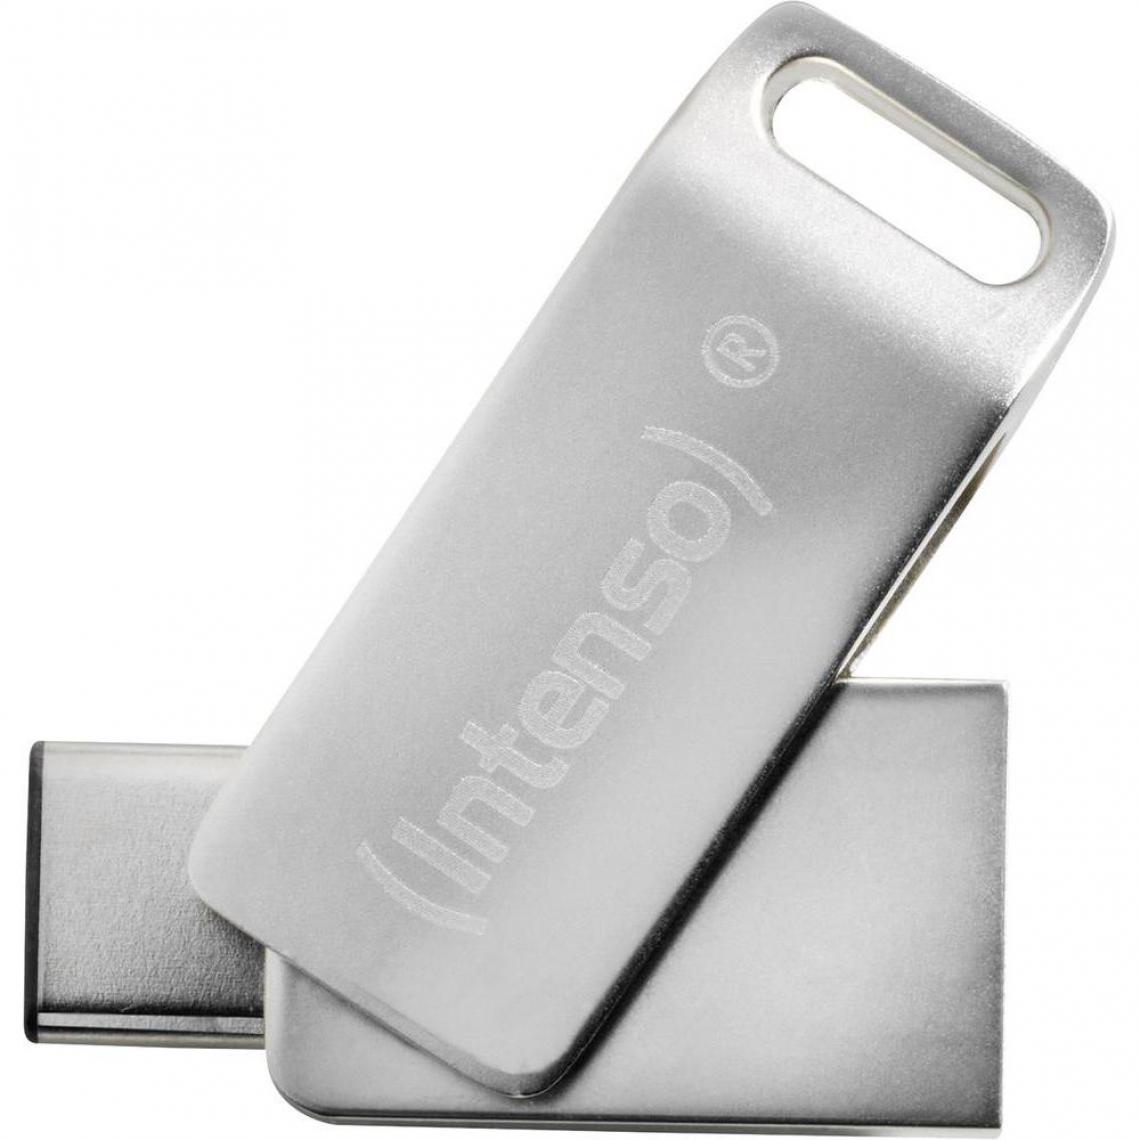 Intenso - Clé USB 16Go Intenso CMobile Line Type C OTG sous Blister - Clés USB